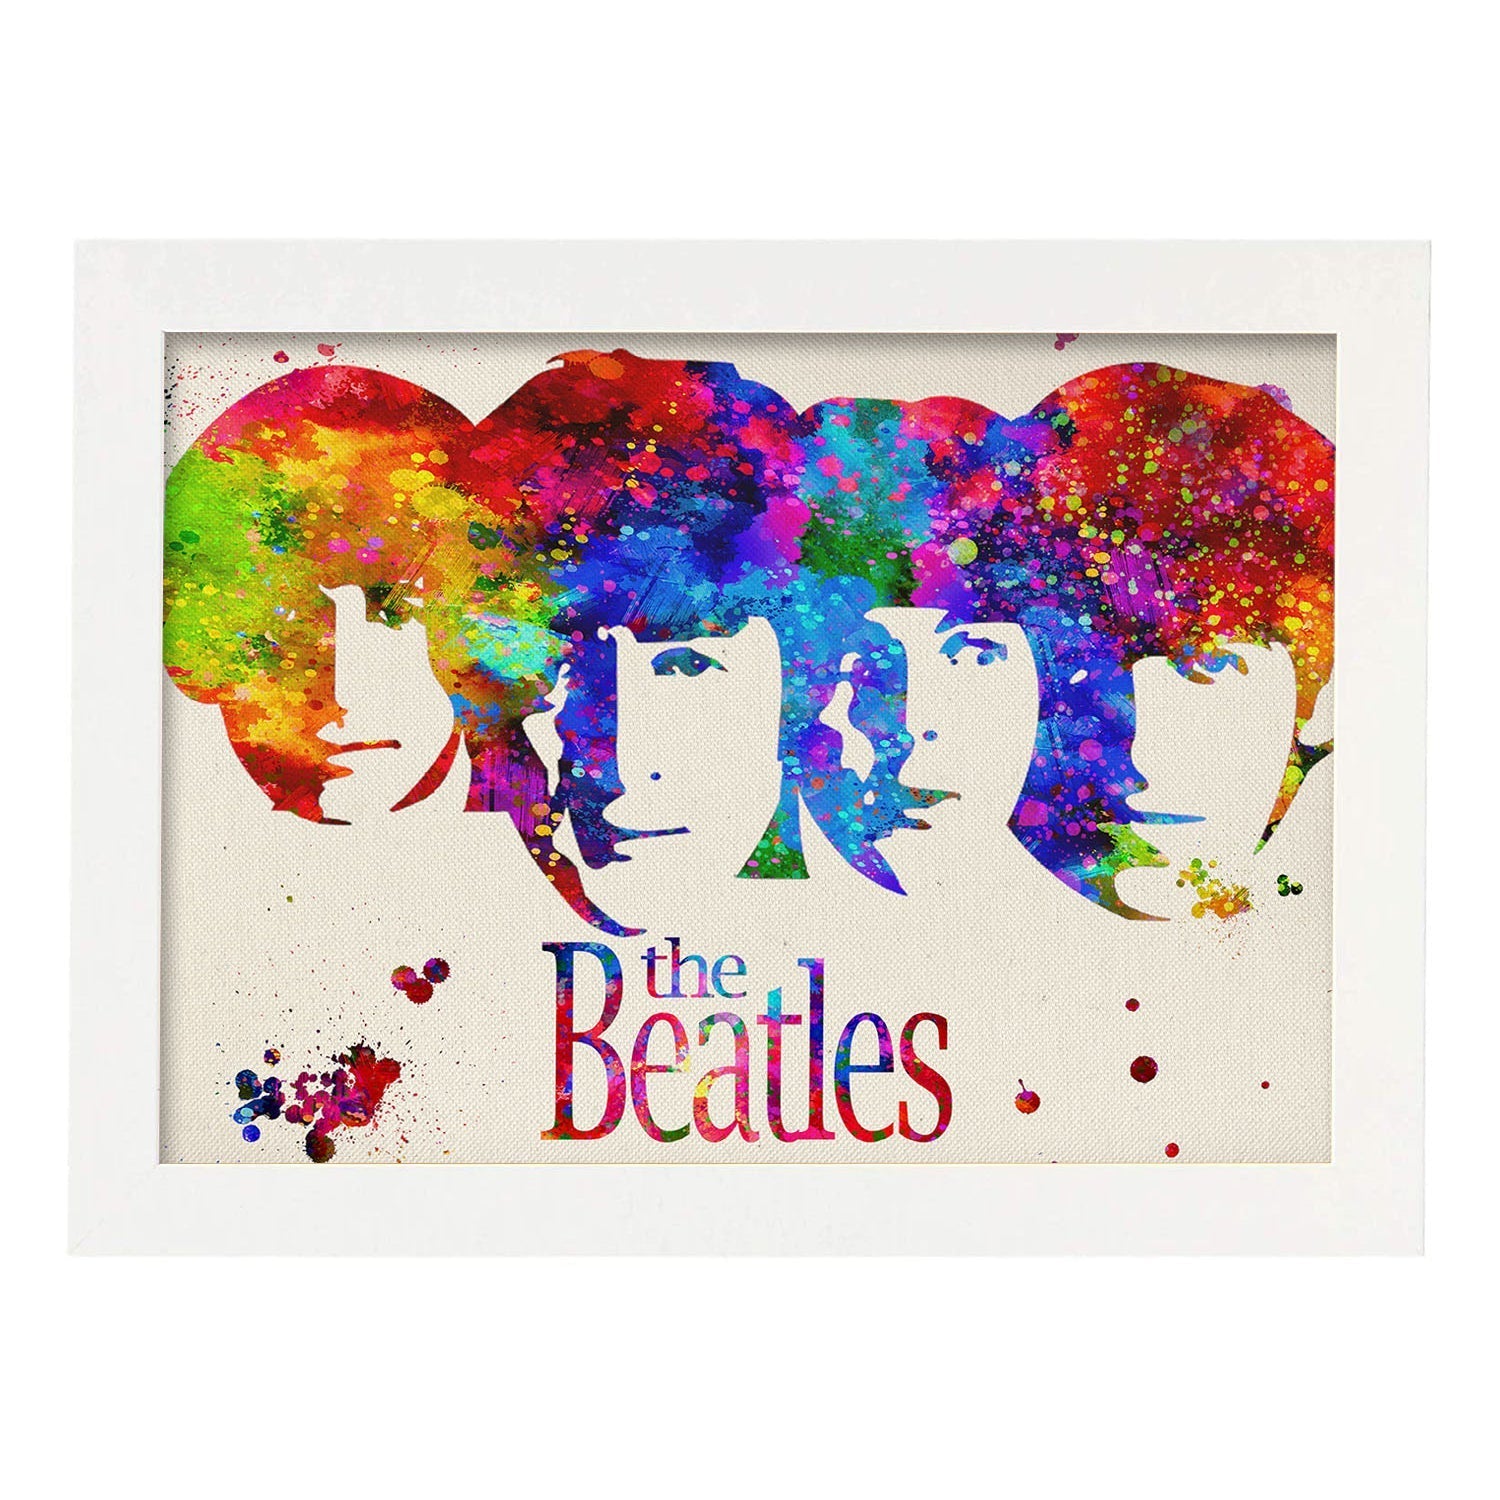 Lámina de la banda de música The Beatles (caras) en Poster estilo explosión de color . Papel 250 gr alta calidad.-Artwork-Nacnic-A3-Marco Blanco-Nacnic Estudio SL